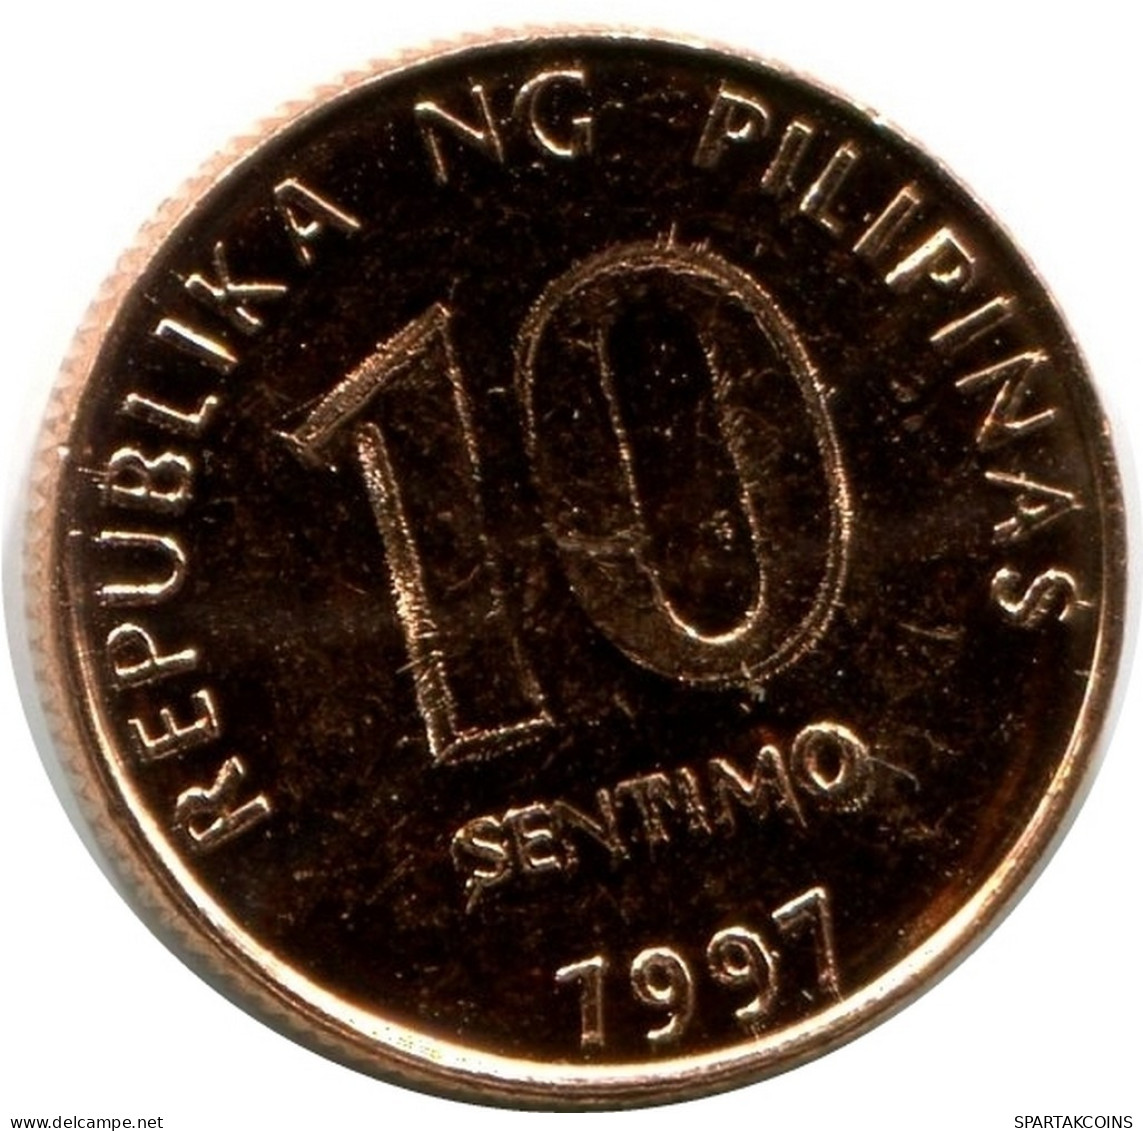 10 CENTIMO 1997 PHILIPPINES UNC Coin #M10059.U.A - Filippine